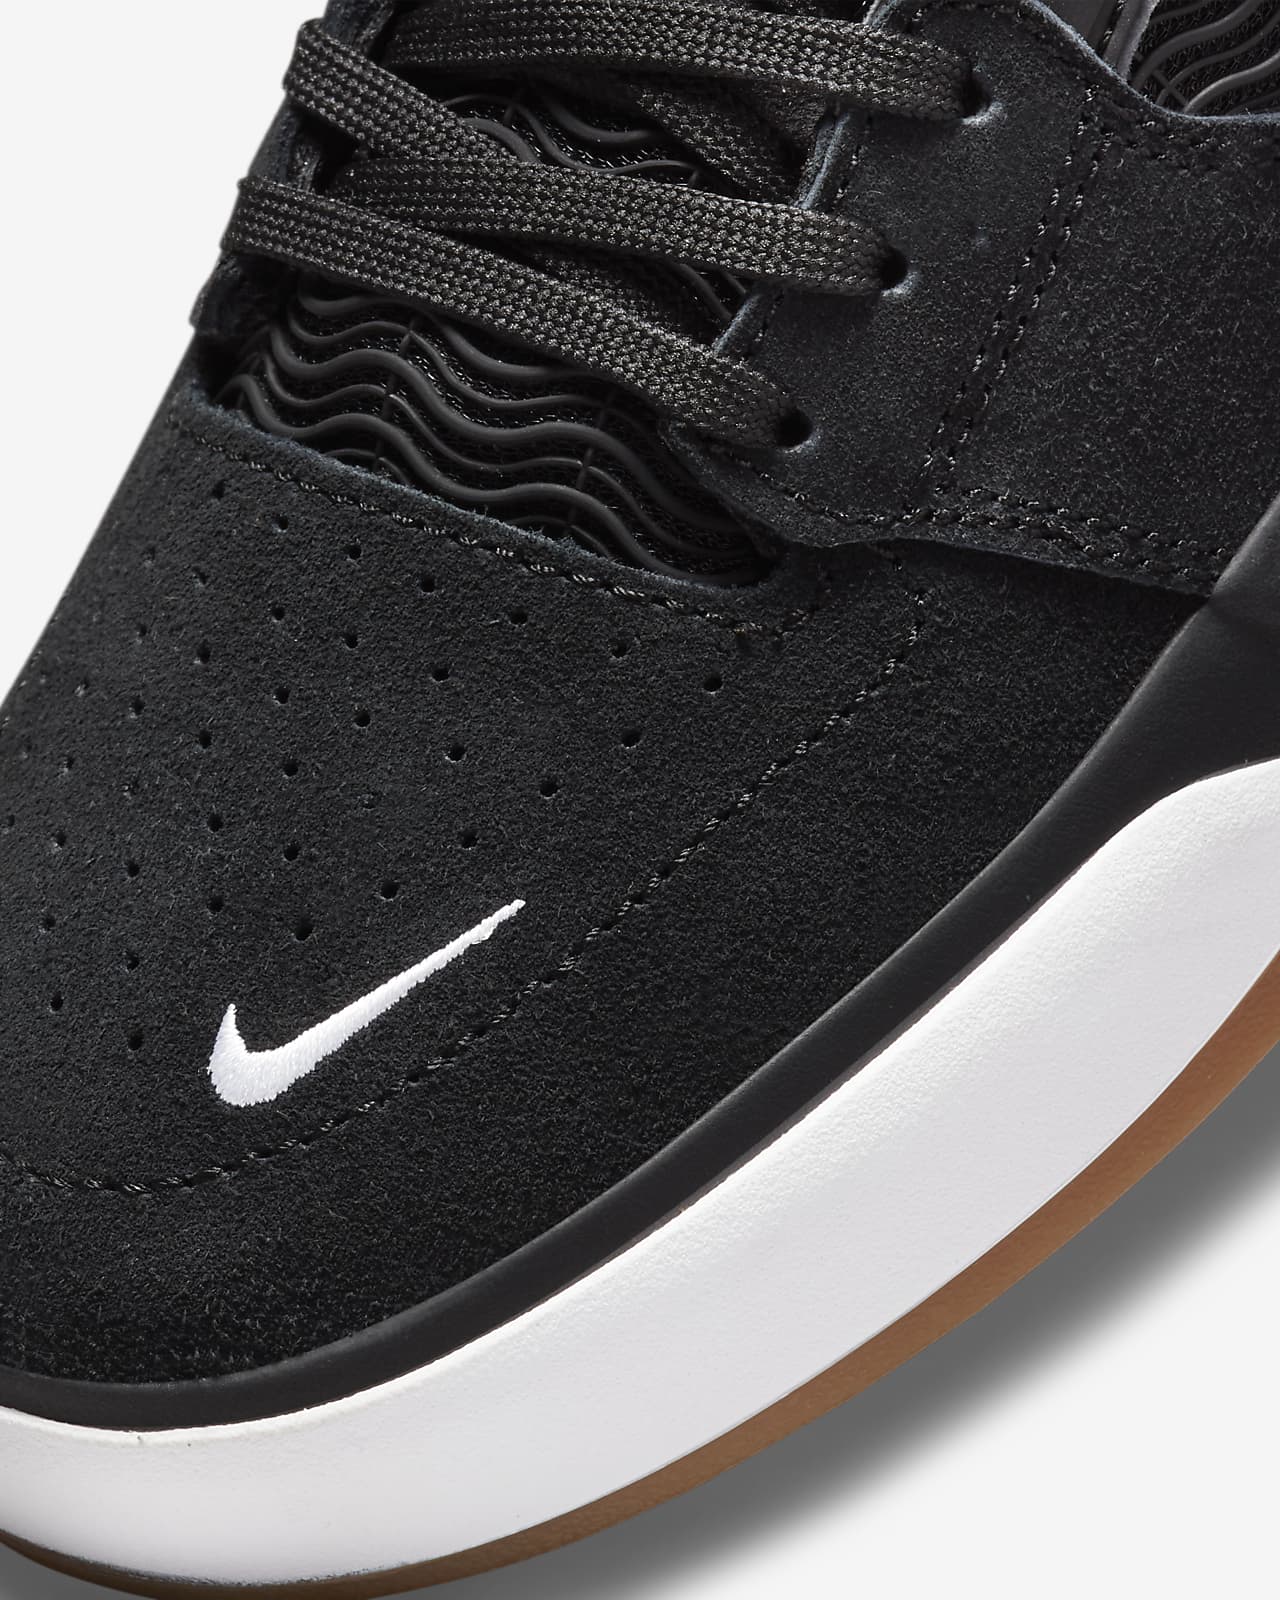 Anmeldelse akavet forsøg Nike SB Ishod Wair Skate Shoes. Nike.com